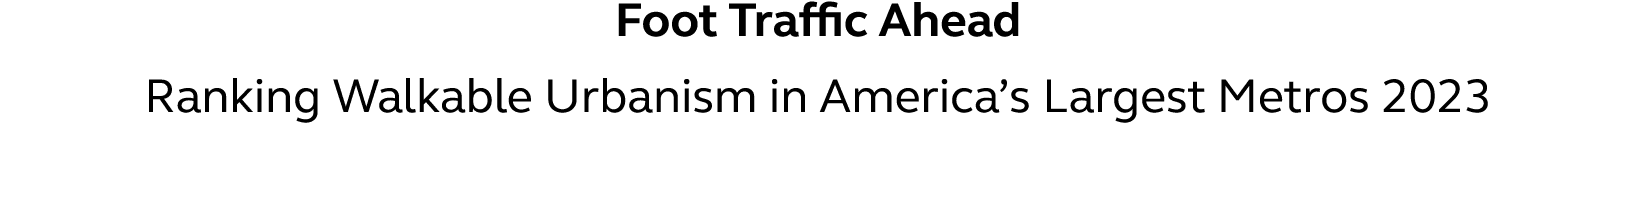 Foot Traffic Ahead Ranking Walkable Urbanism in America s Largest Metros 2023